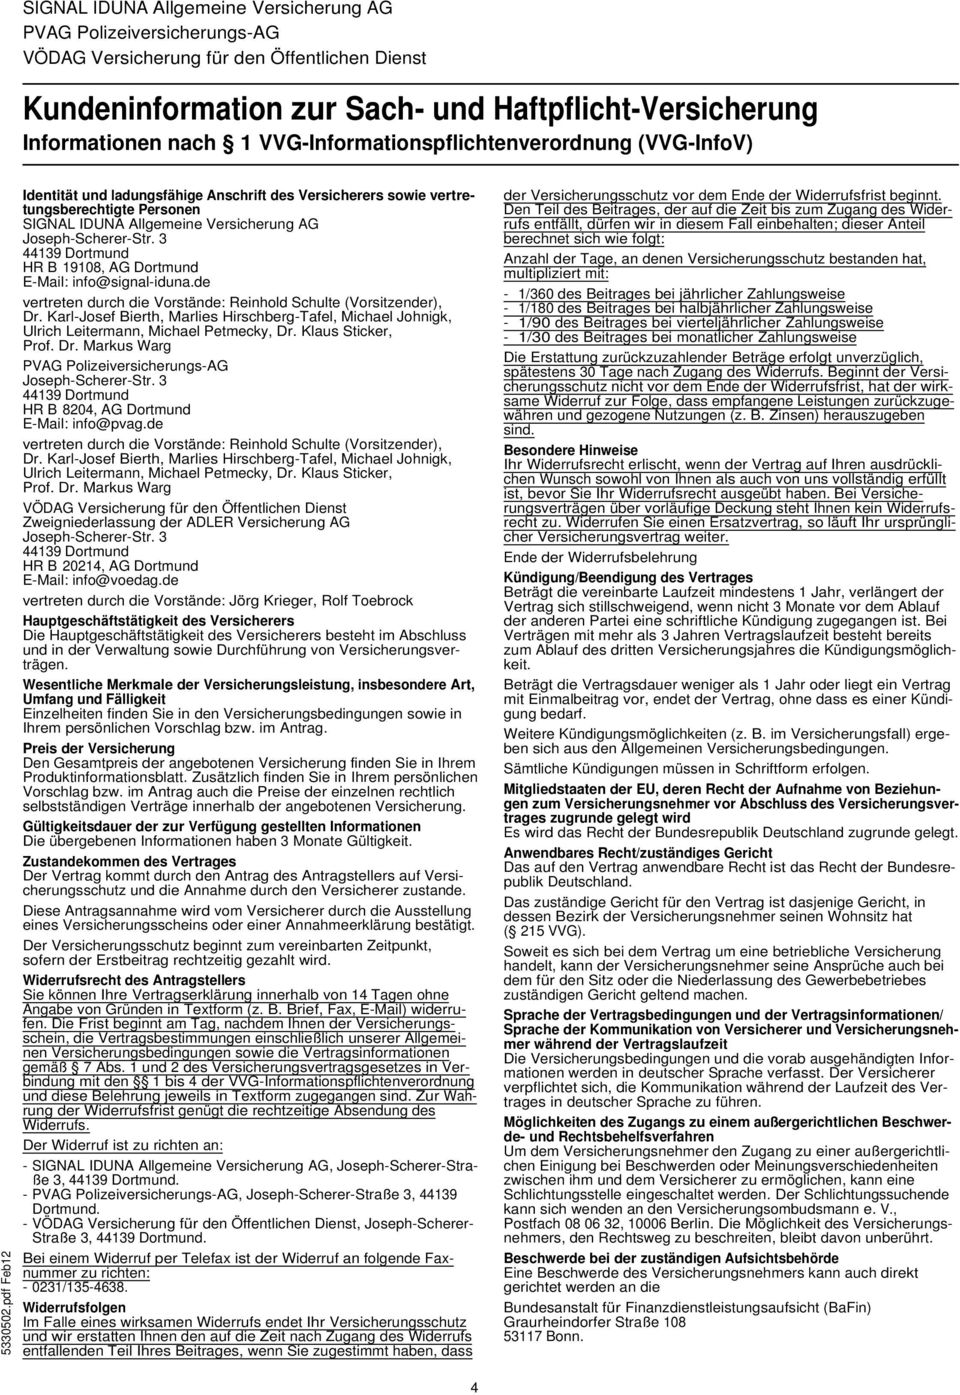 pdf Feb12 Identität und ladungsfähige Anschrift des Versicherers sowie vertretungsberechtigte Personen SIGNAL IDUNA Allgemeine Versicherung AG Joseph-Scherer-Str.